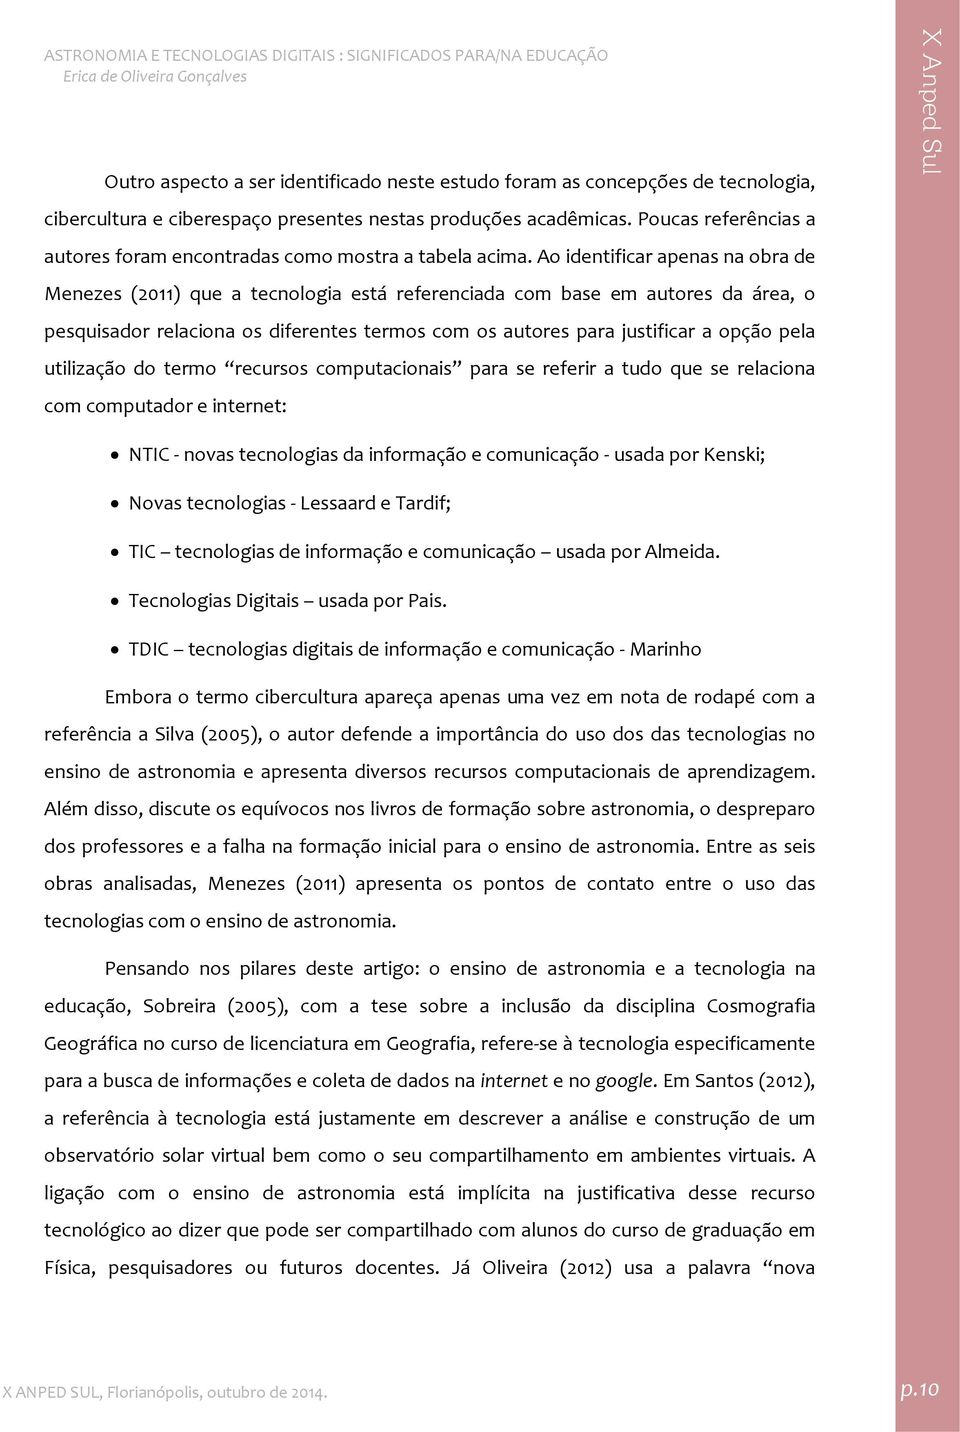 Ao identificar apenas na obra de Menezes (2011) que a tecnologia está referenciada com base em autores da área, o pesquisador relaciona os diferentes termos com os autores para justificar a opção